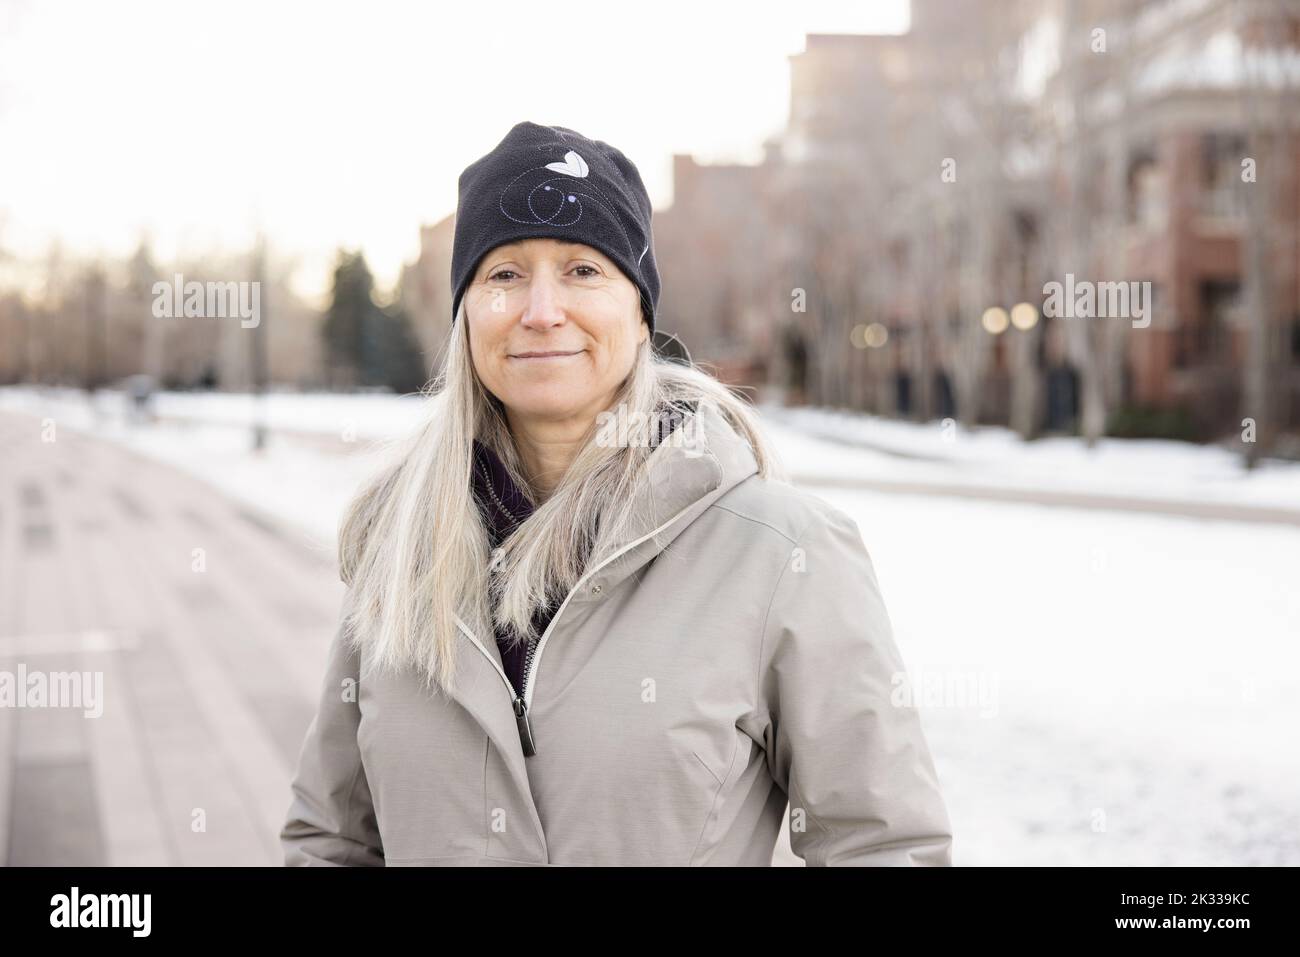 Ritratto sicuro donna in inverno cappotto e cappello nel parco nevoso della città Foto Stock